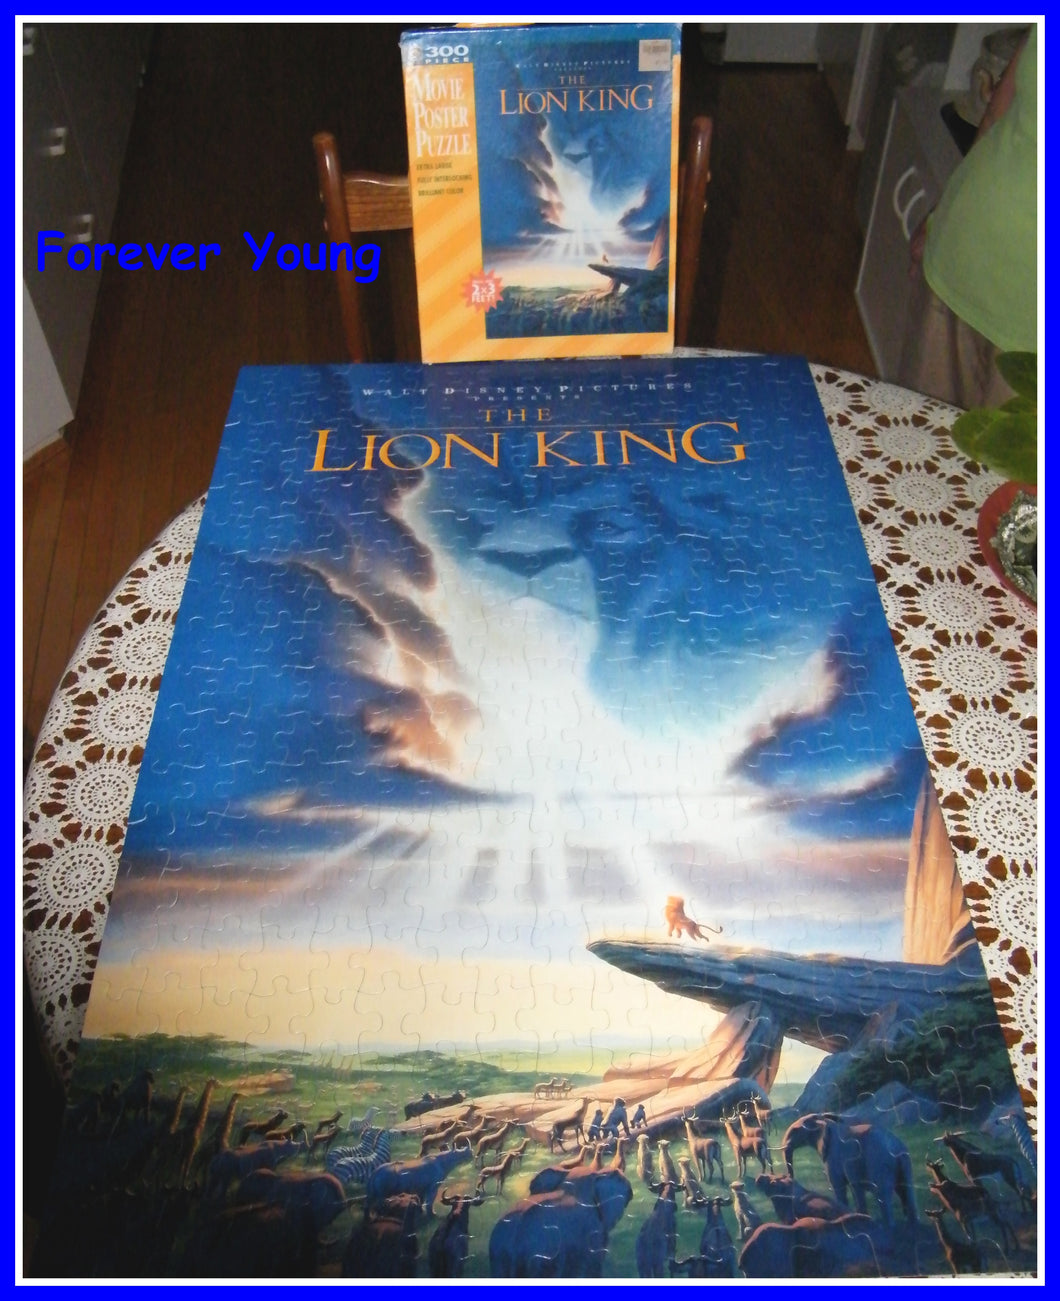 DISNEY Puzzle - LION KING 300 pieces - complete w box